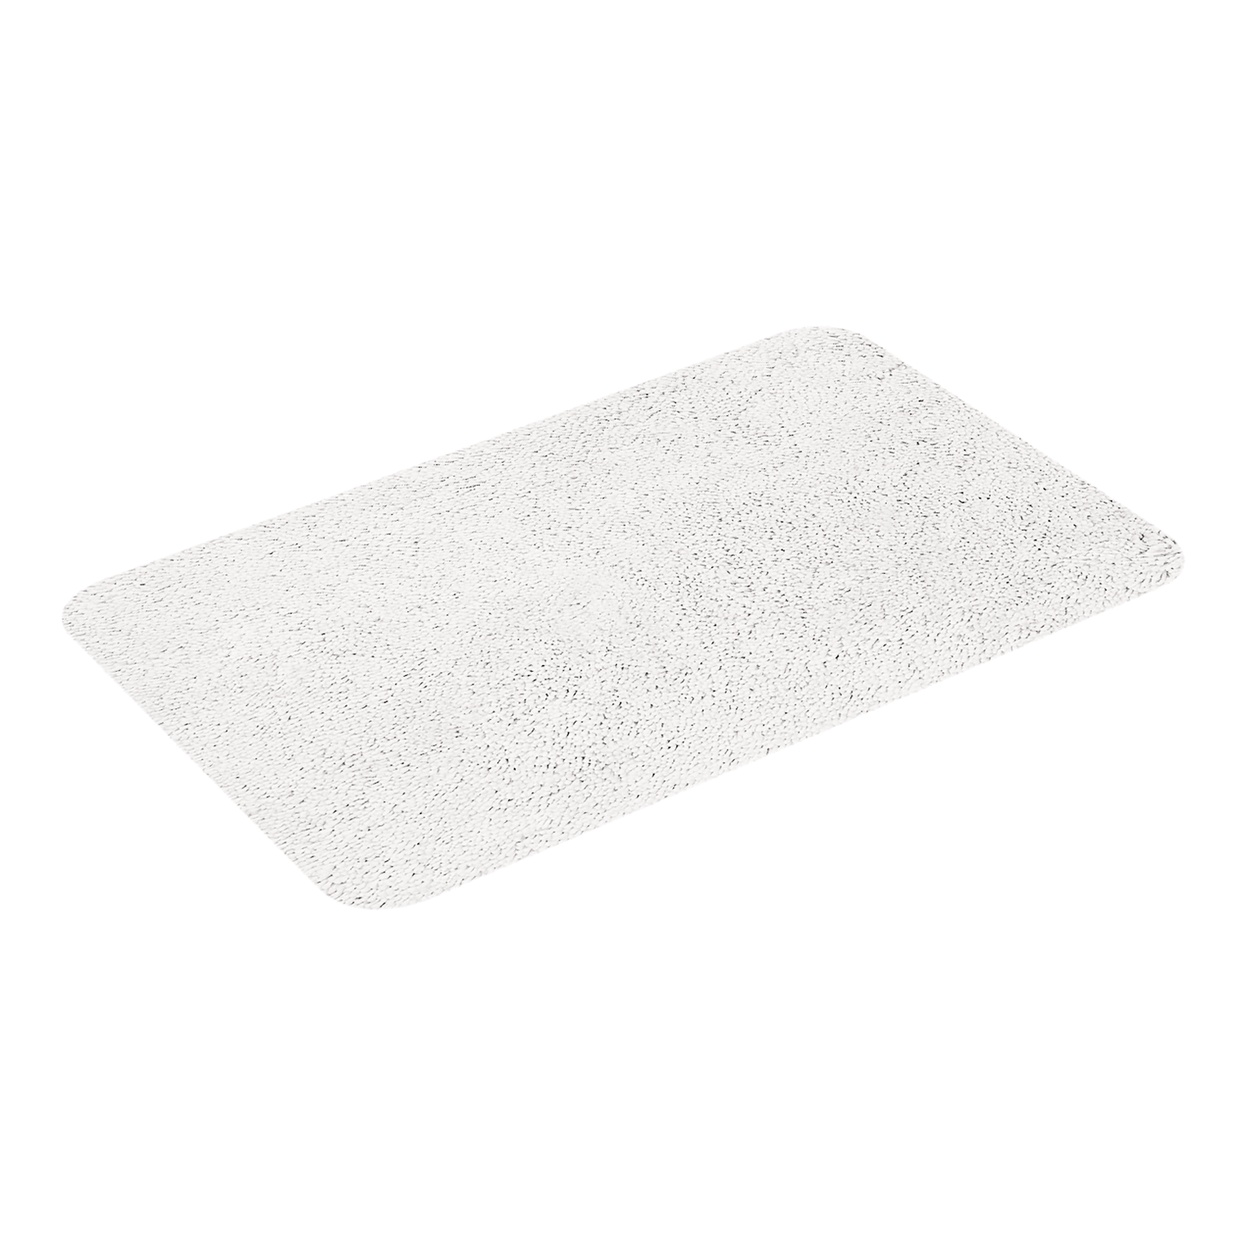 Коврик для ванной Highland белый, 55 x 65 см (Spirella 1013060)